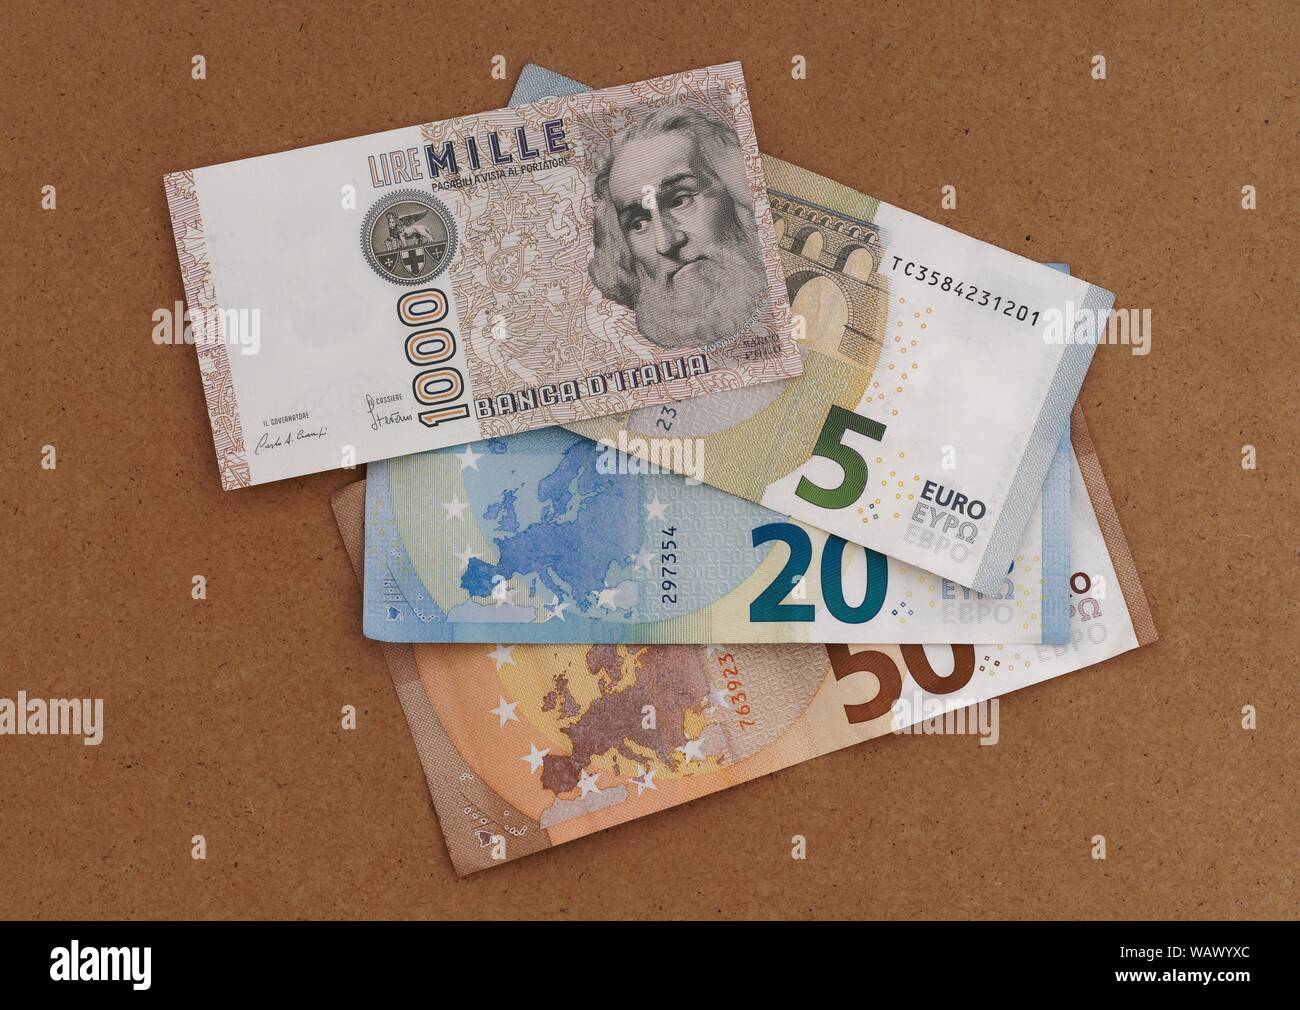 MASSA CARRARA, Italia - 14 agosto 2019: Italiano Prodotti vintage e obsoleti di Lire nota le sovrapposizioni e la parte oscura la nuova valuta Euro. Foto Stock